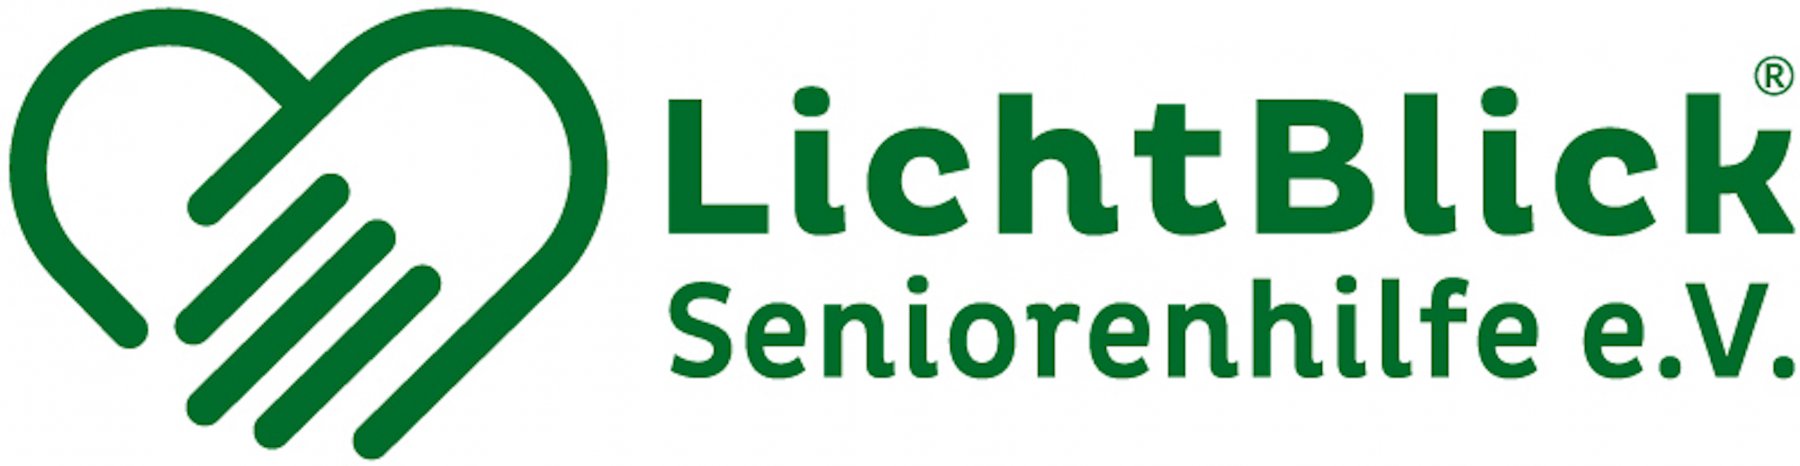 Geheimtipp Muenchen Muenchen Vereint Lichtblick Seniorenhilfe6 – ©LichtBlick Seniorenhilfe e.V.